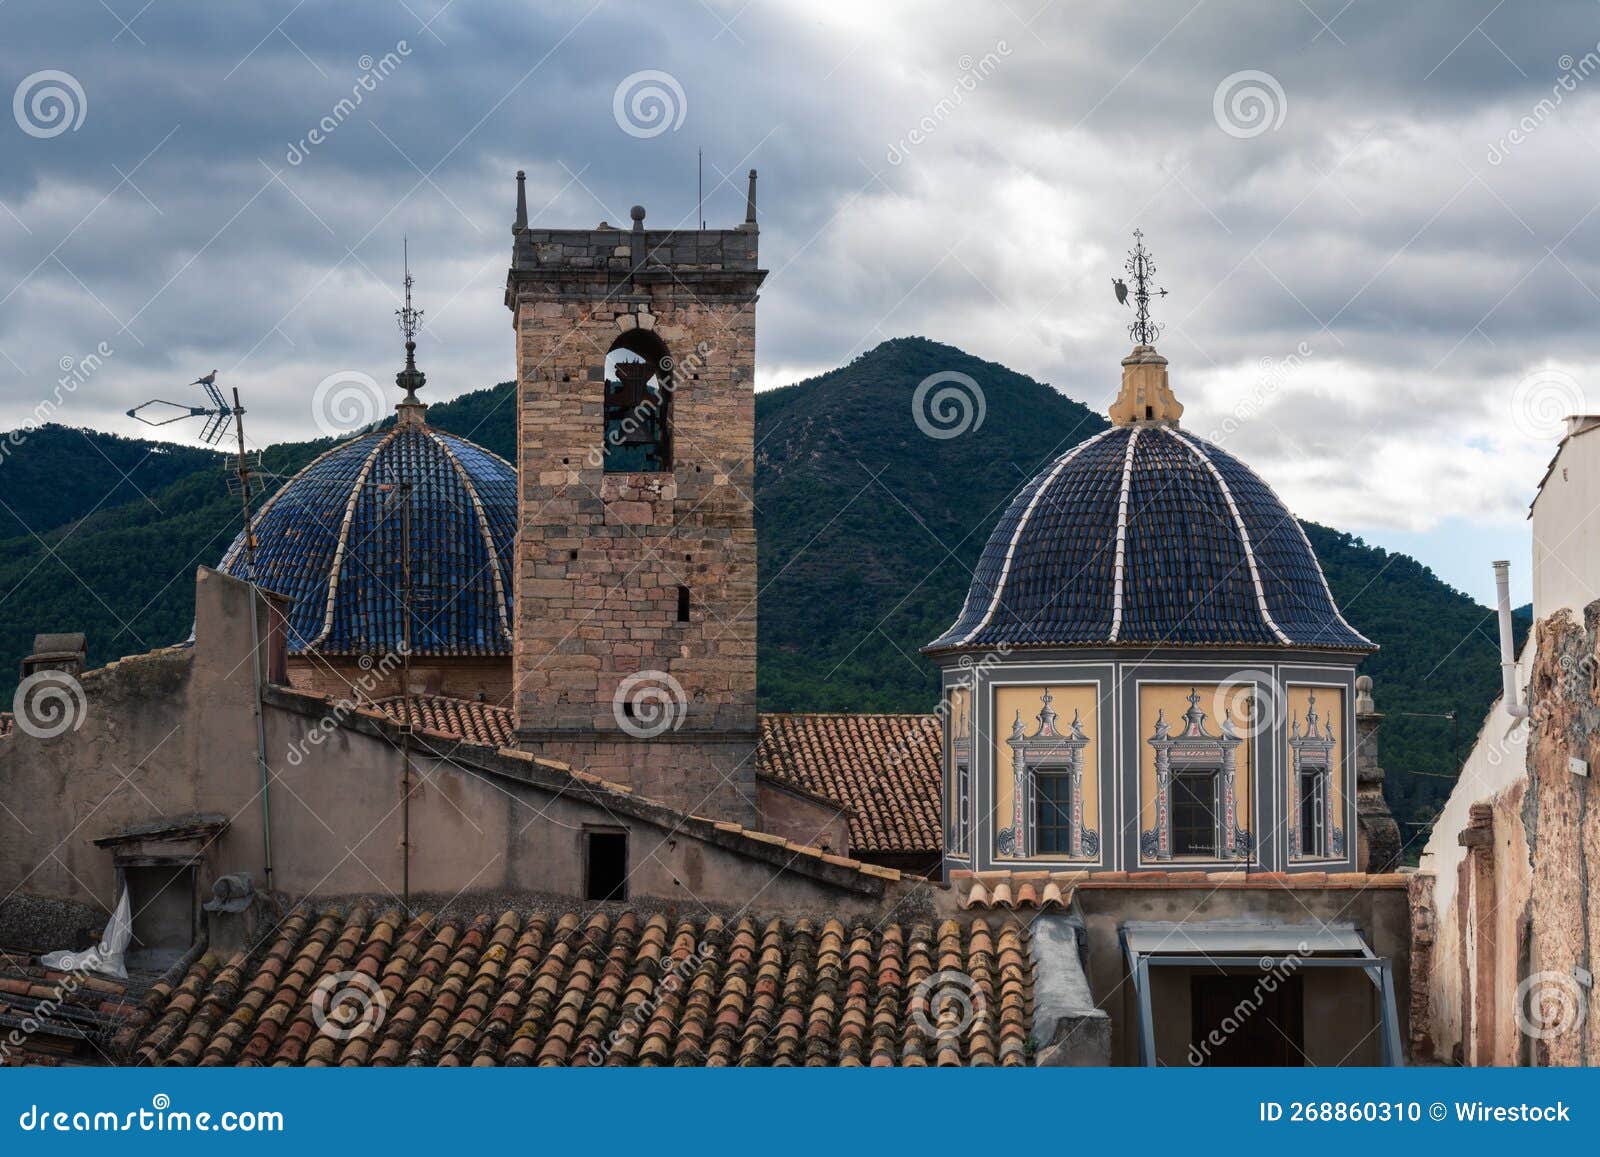 brick tower and dome steeple of iglesia de la asuncion  church in onda, castellon, spain